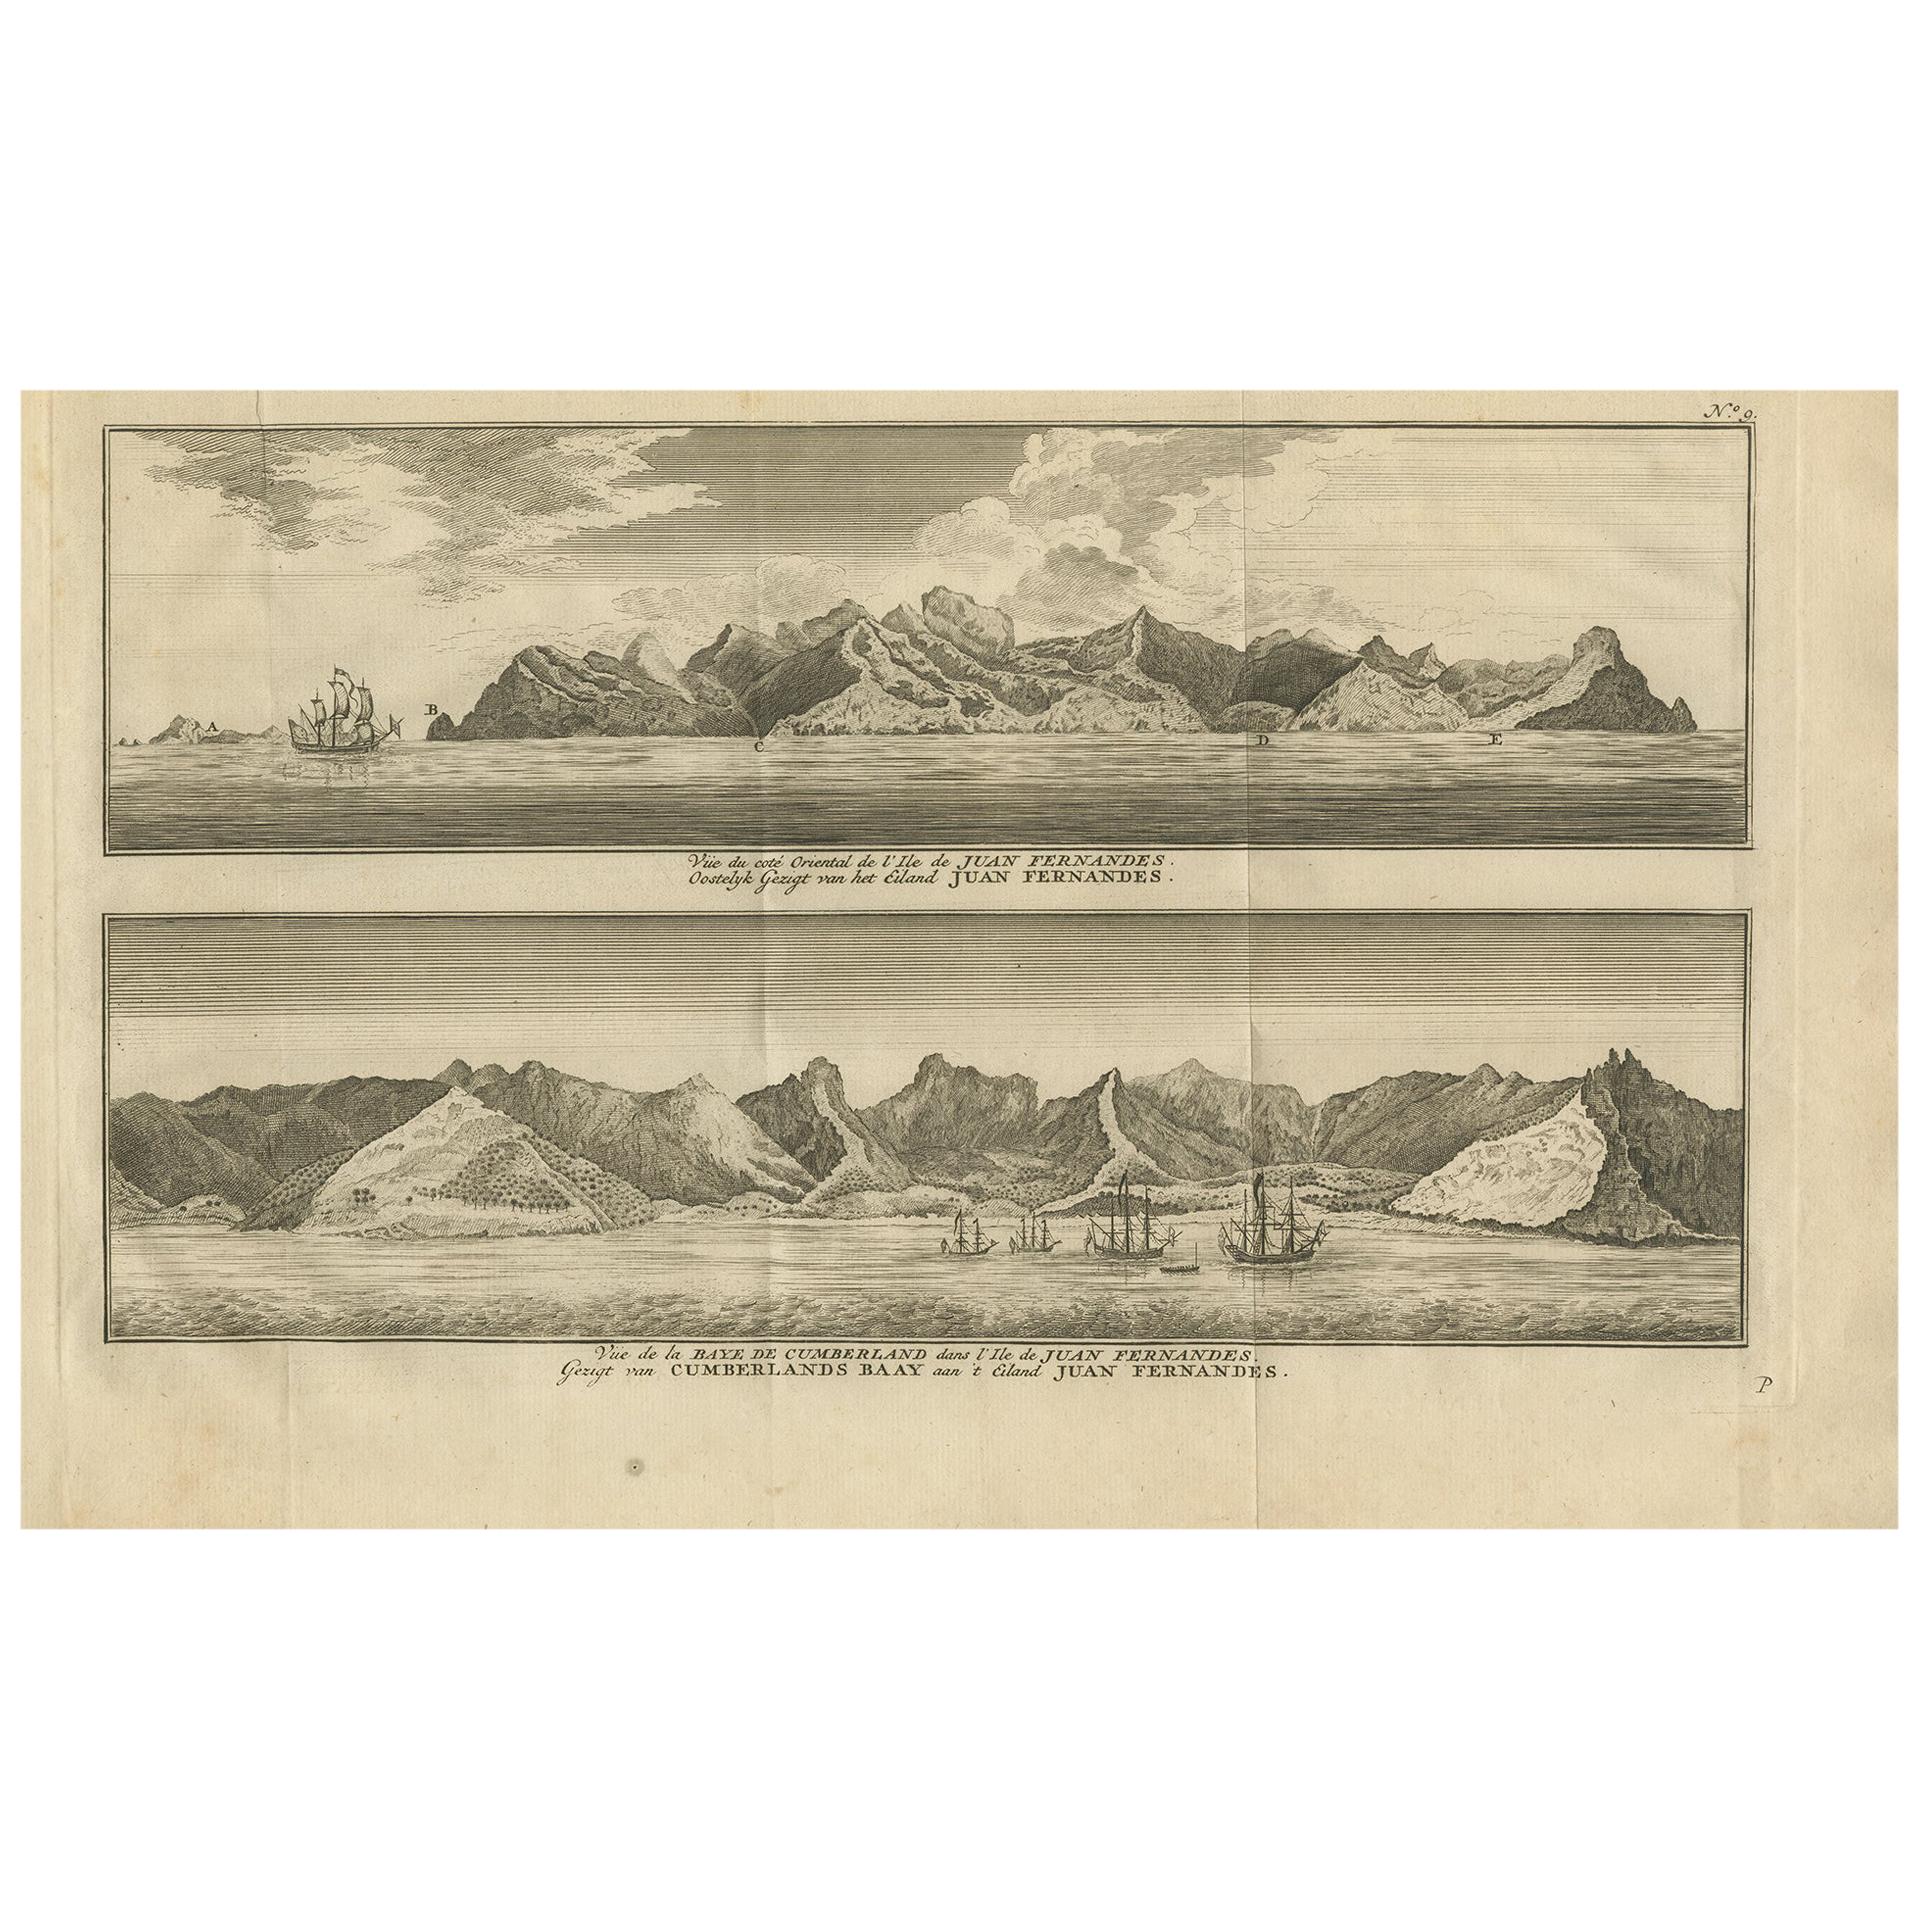 Impression ancienne de la baie de Cumberland et de l'île de Juan Fernandez par Anson, 1749